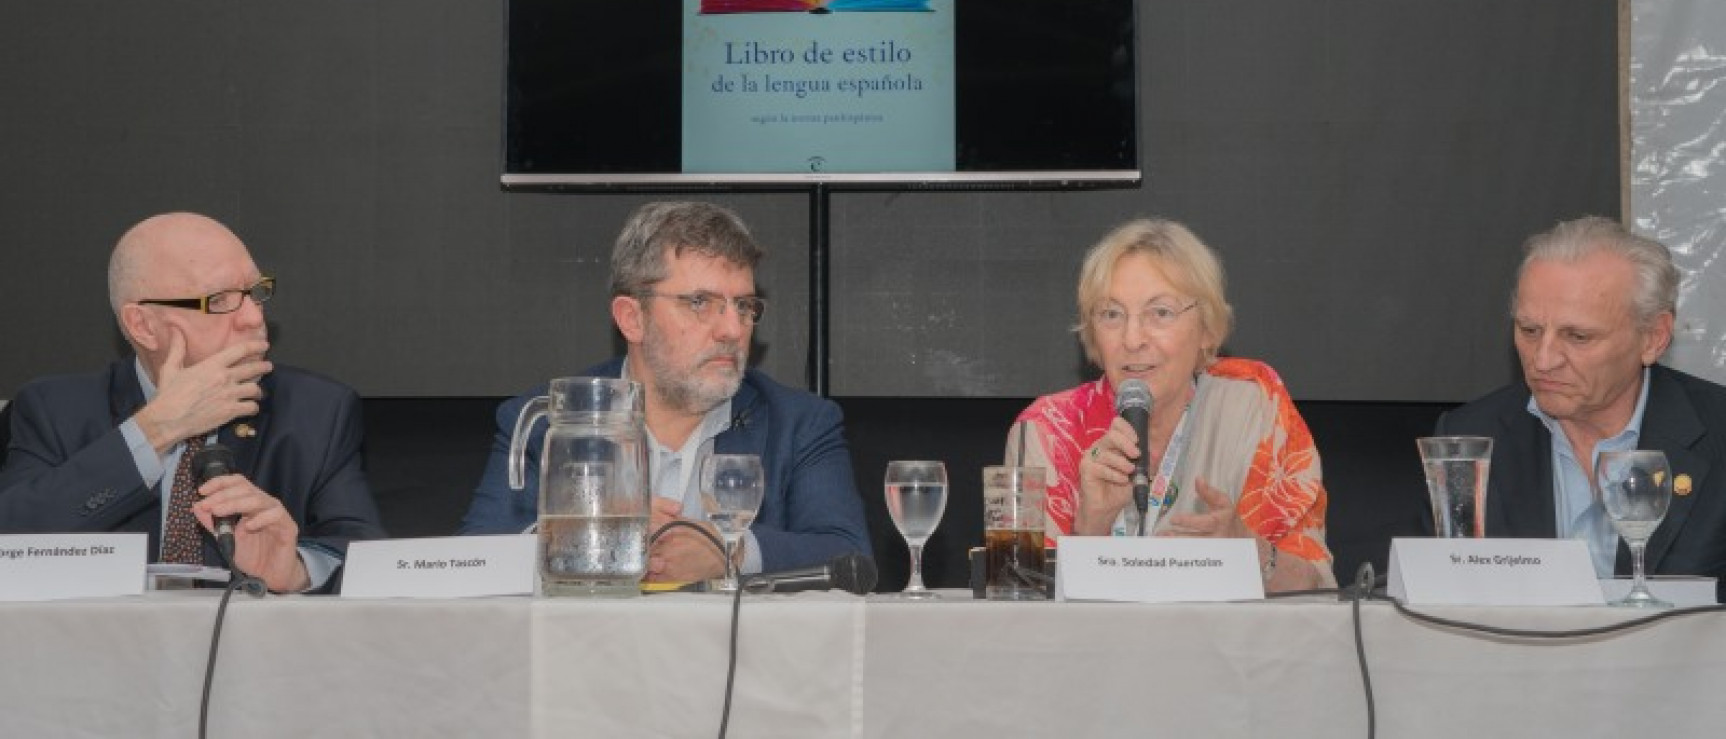 Presentación del «Libro de estilo de la lengua española» en Córdoba (Argentina).